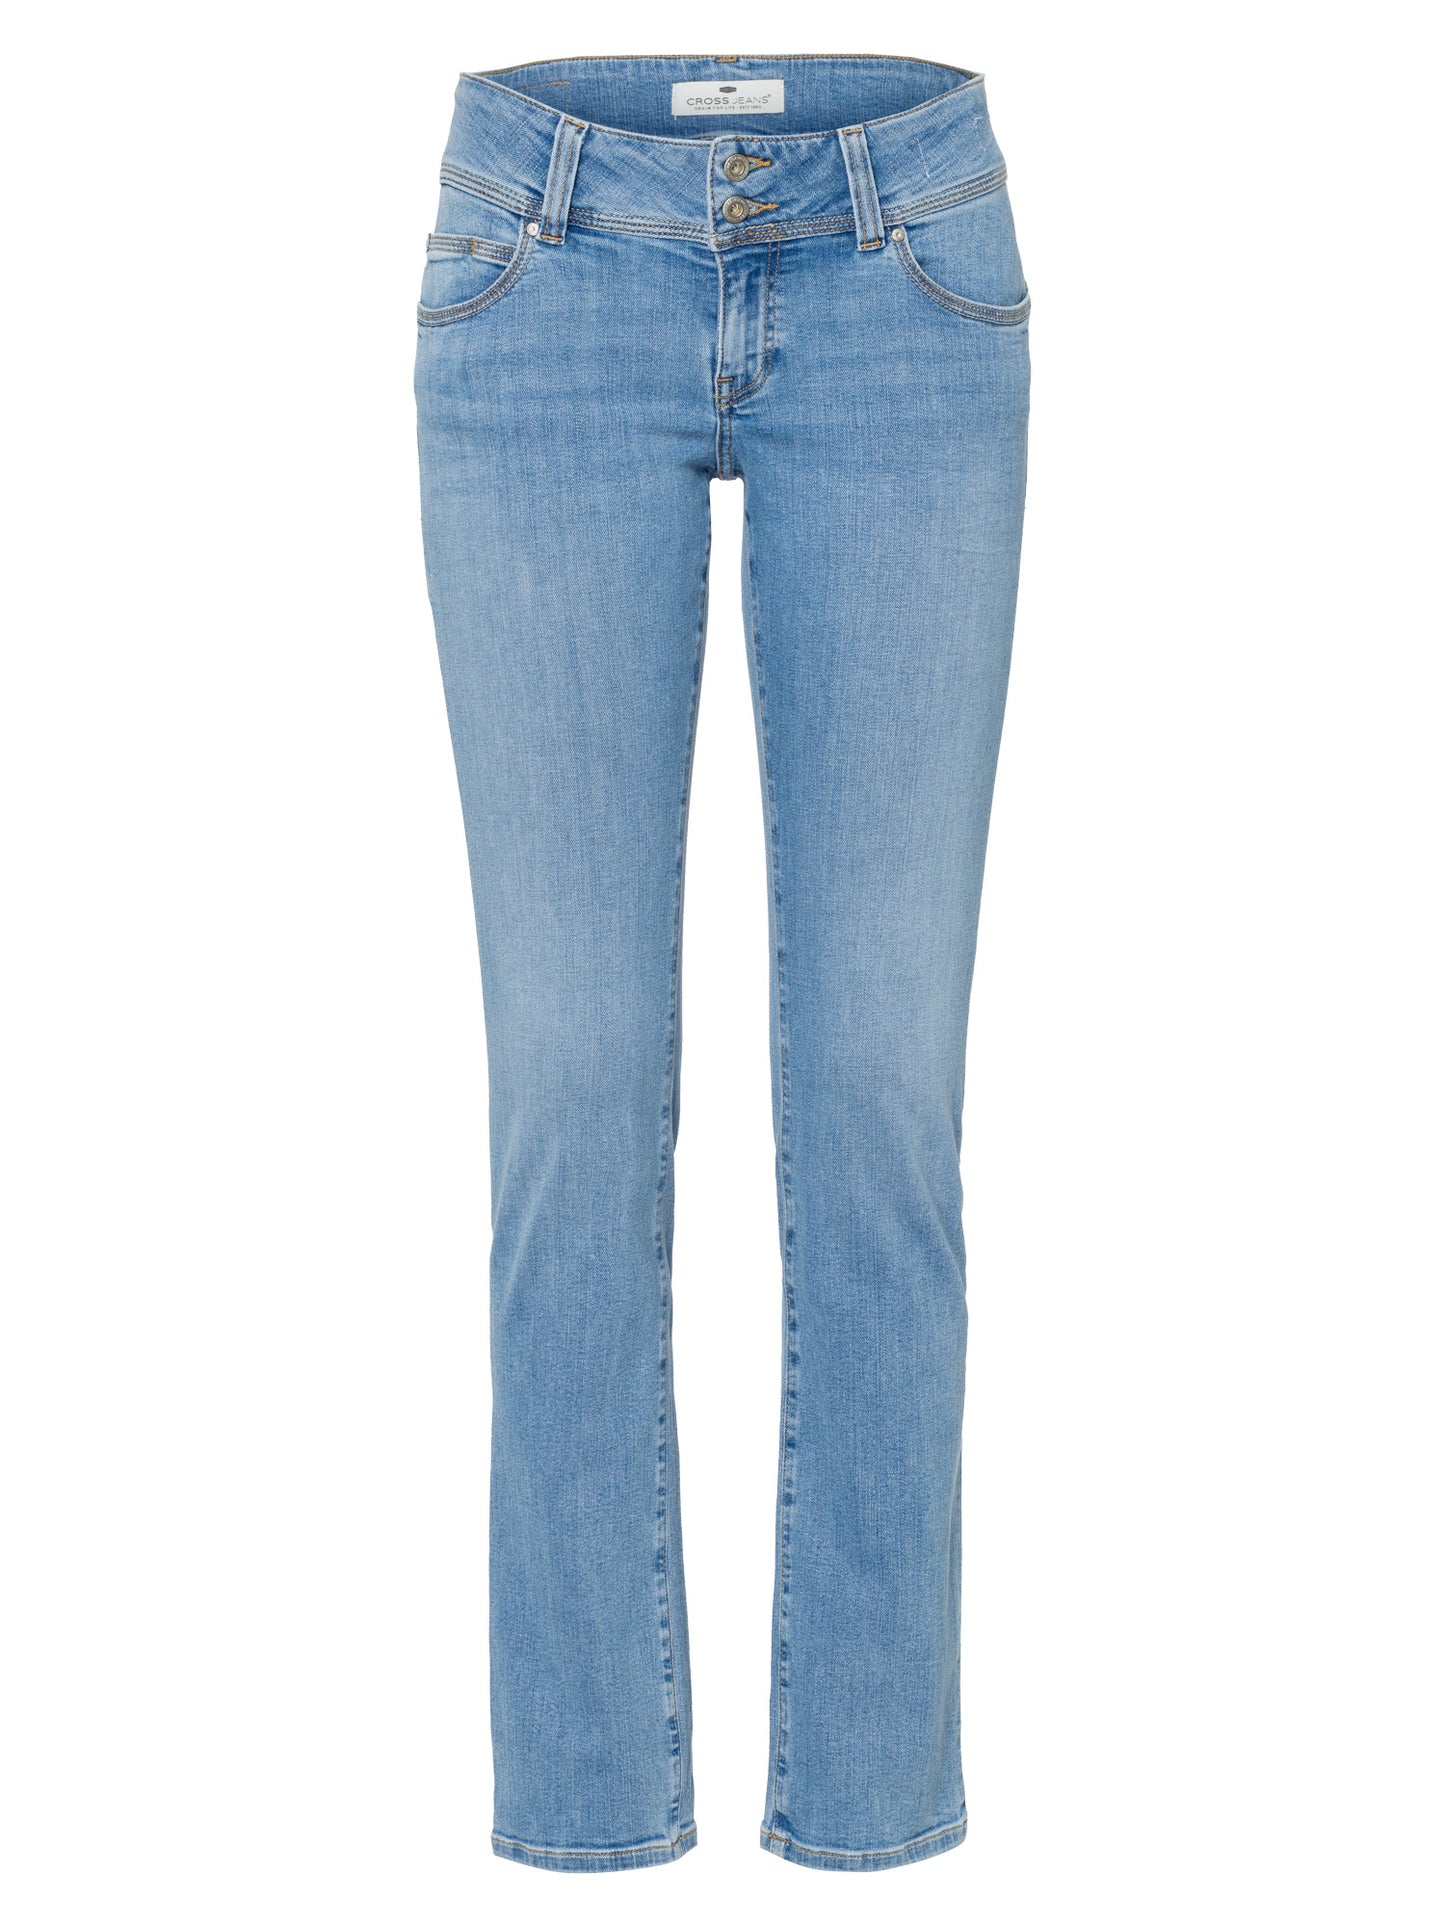 Loie women's jeans regular fit mid waist straight leg light blue